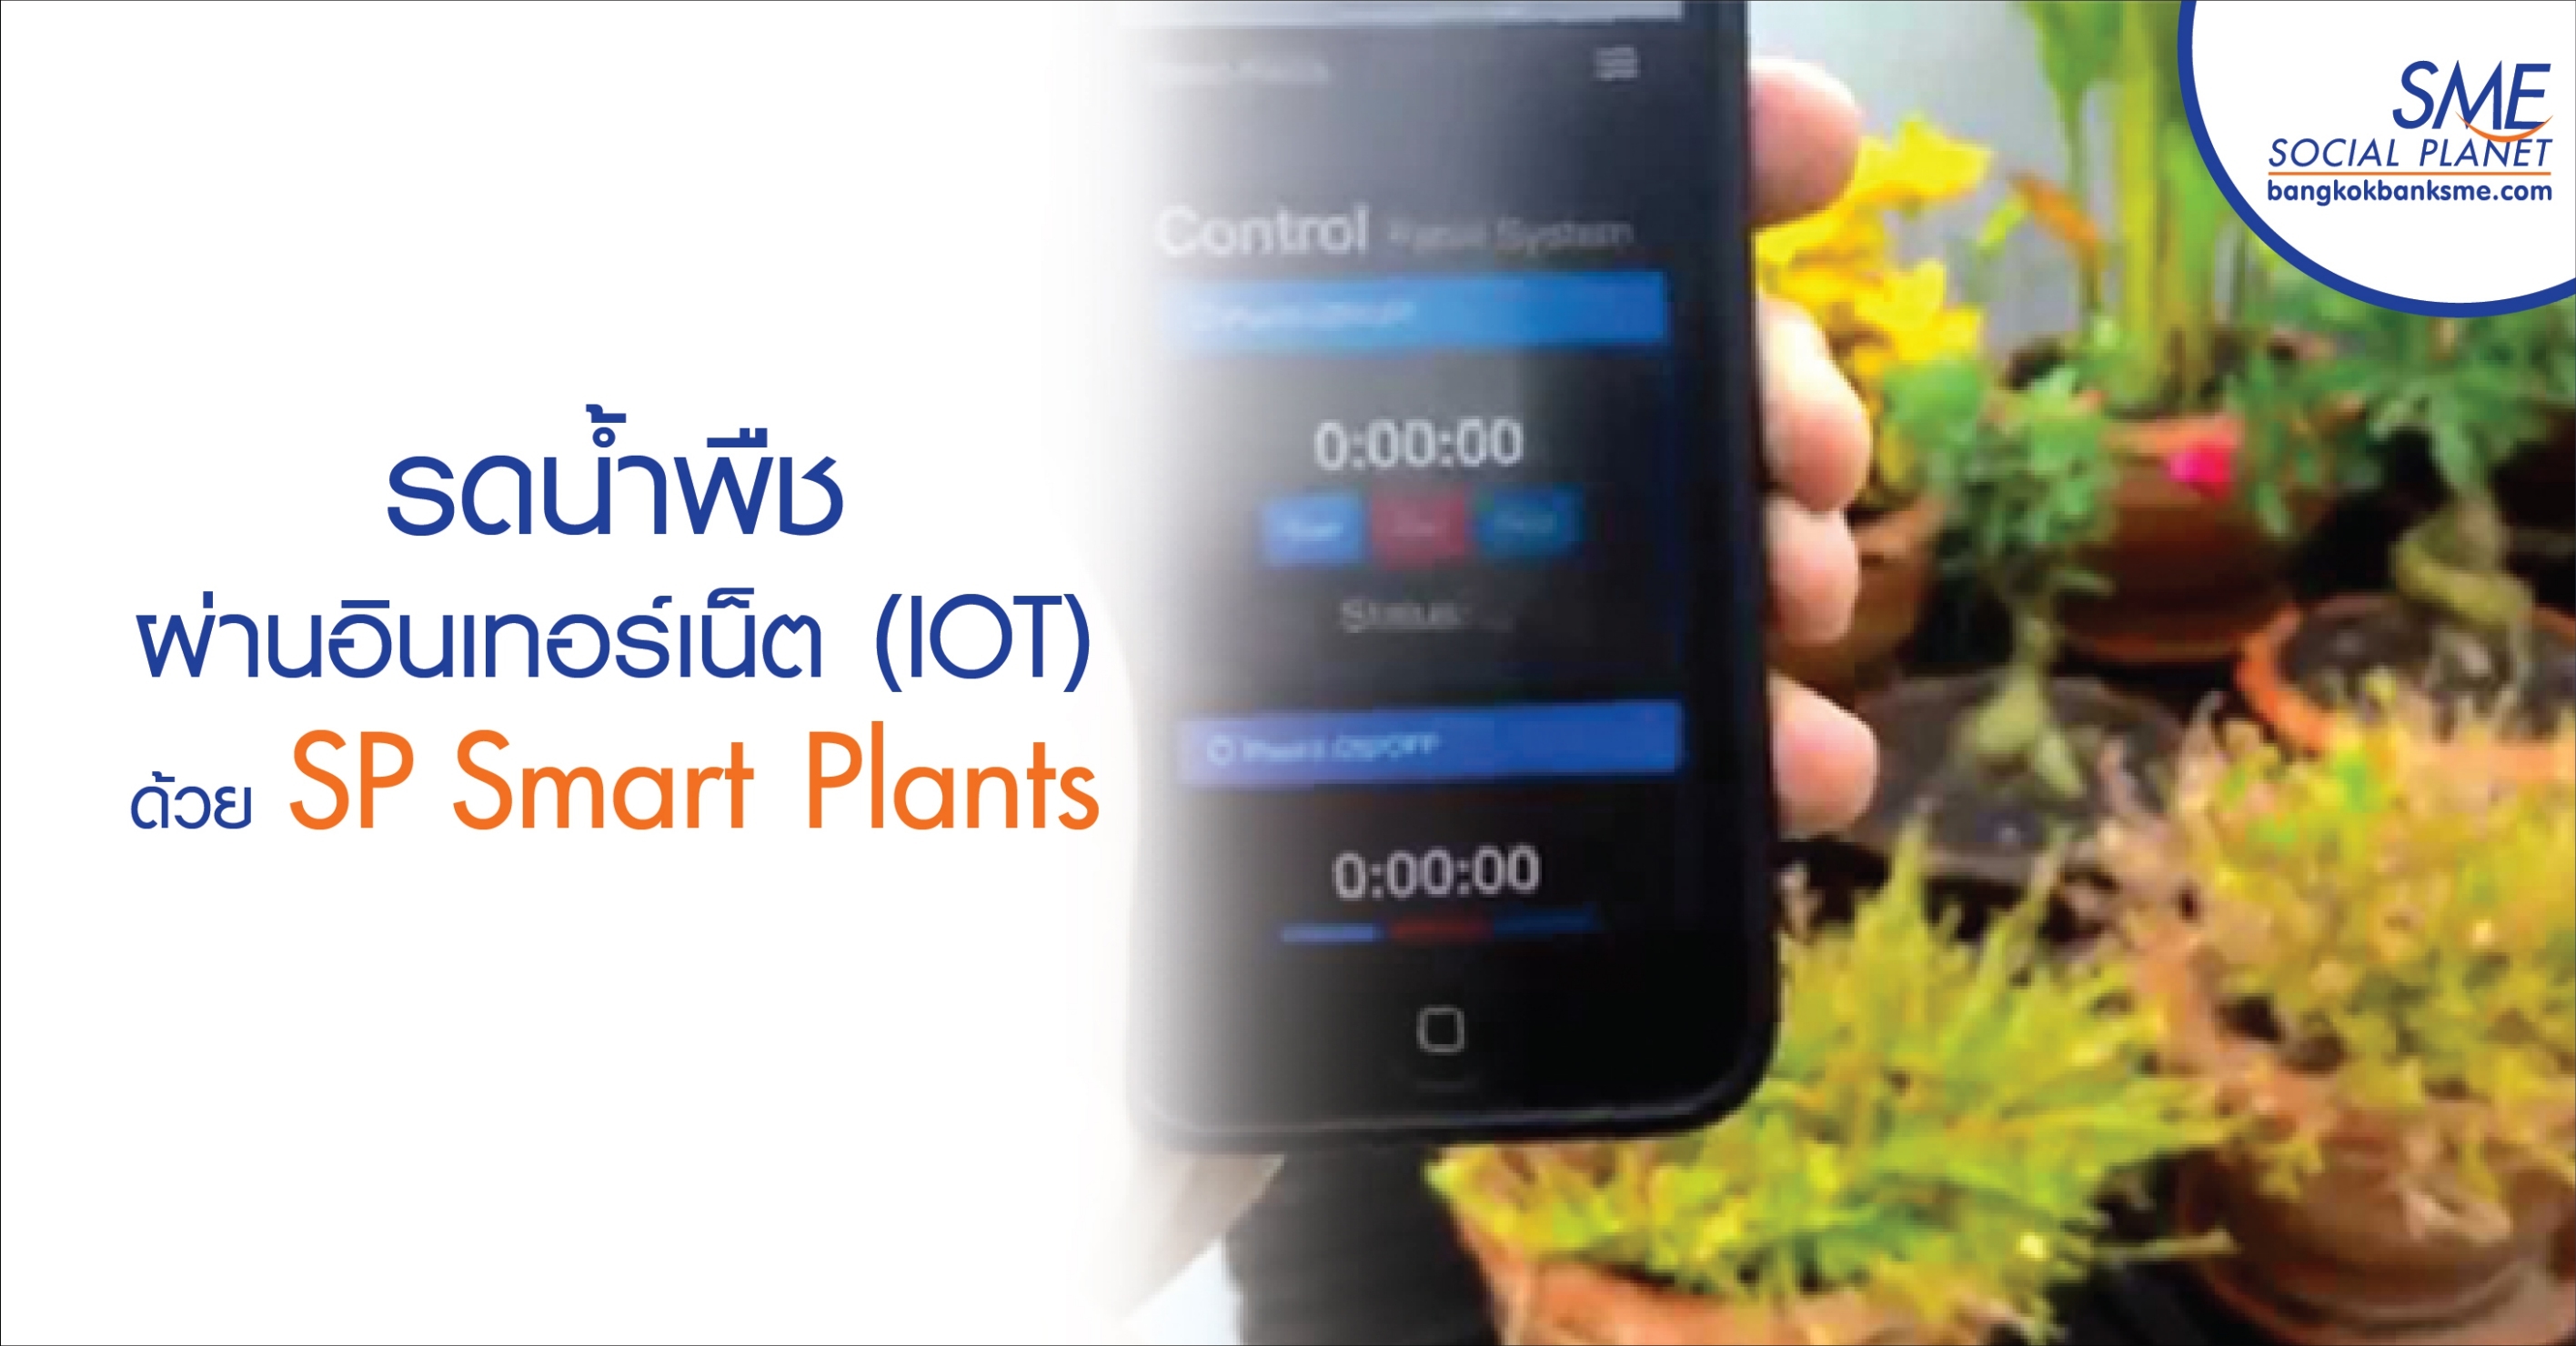 รดน้ำพืชผ่านอินเทอร์เน็ต (IOT) ด้วย SP Smart Plants